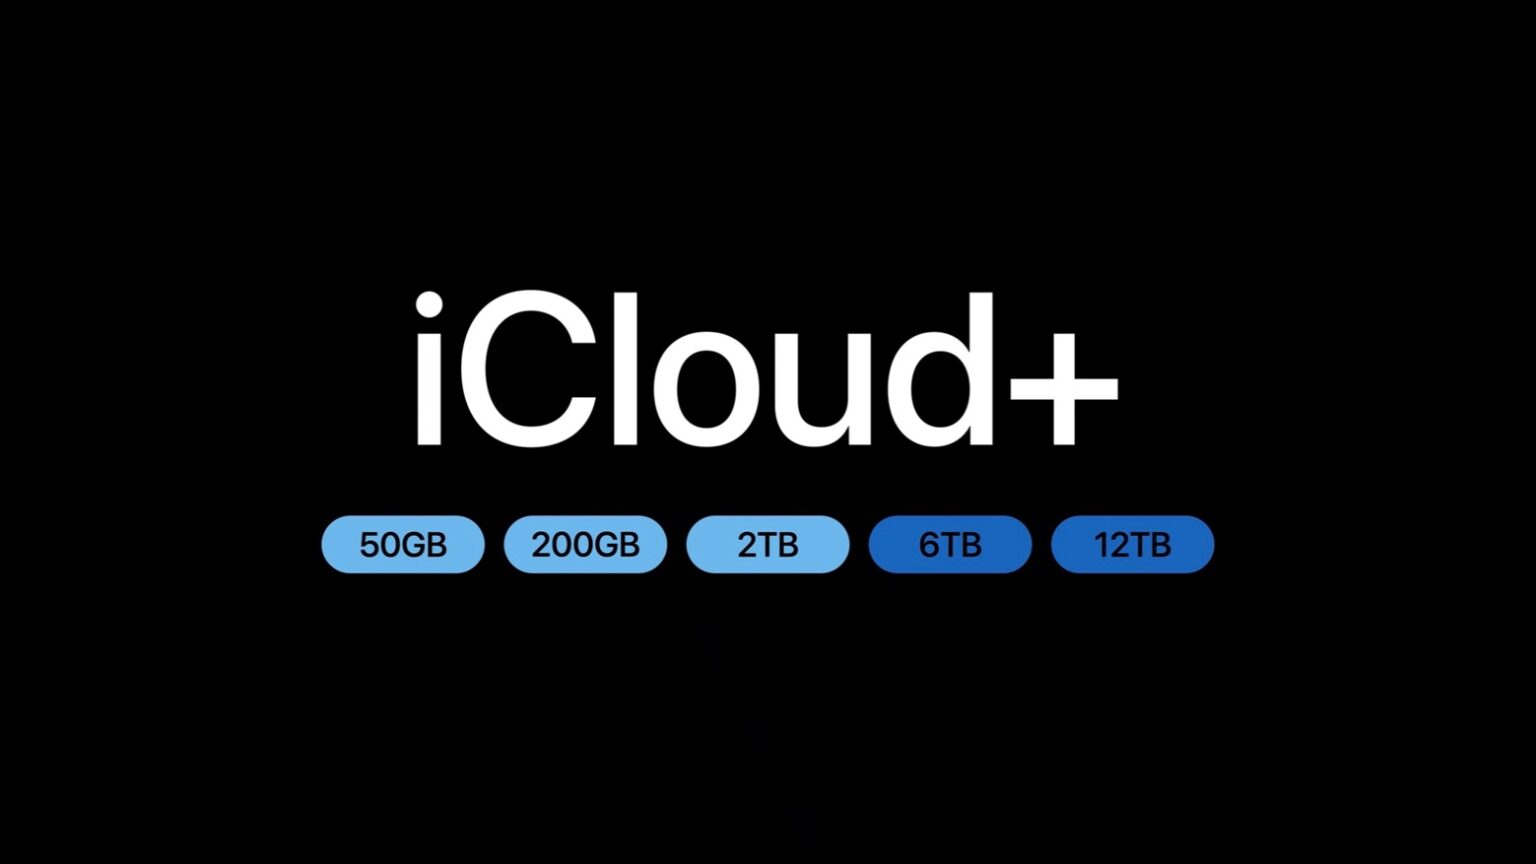 iCloud+ Storage Capacity